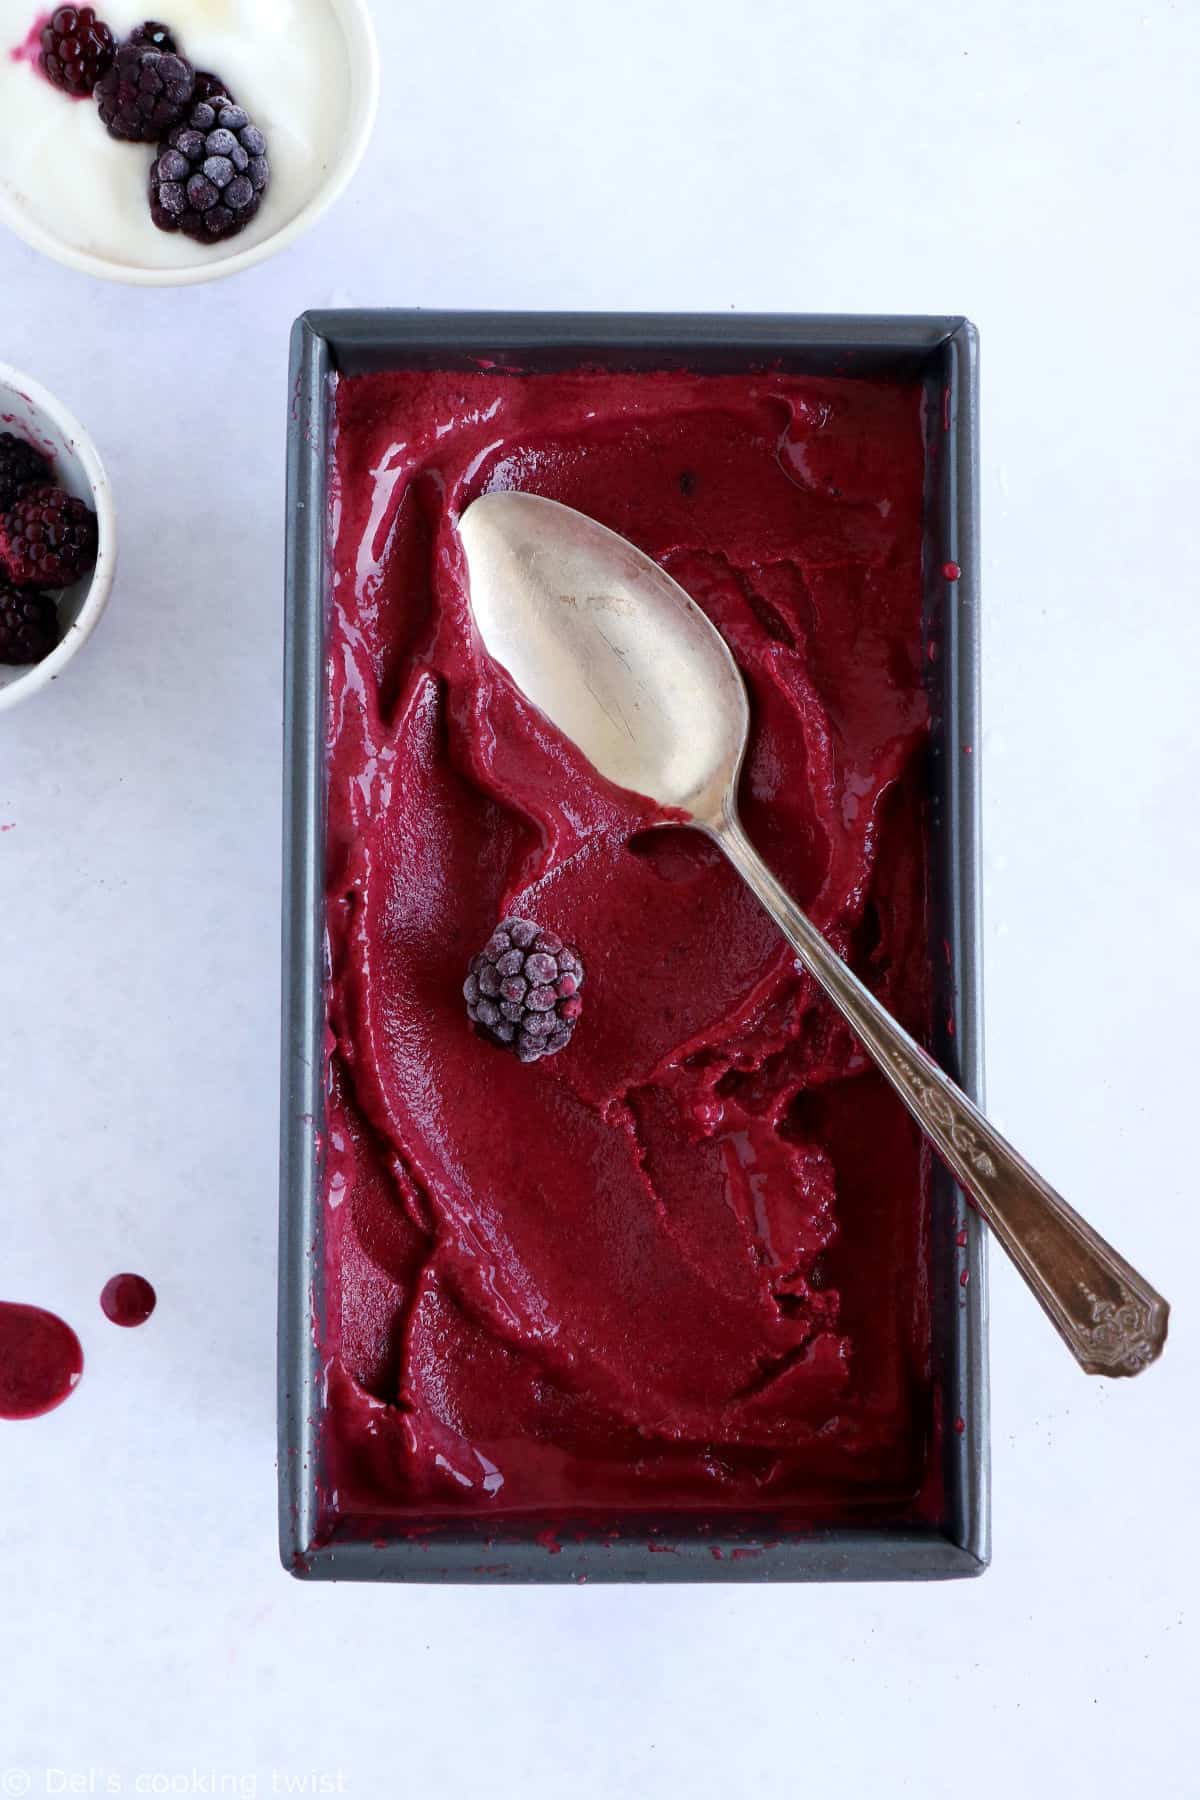 Le yaourt glacé aux fruits rouge, que l'on appelle aussi "frozen yogurt", c'est 5 minutes de préparation pour une glace maison saine, gourmande et rafraîchissante.